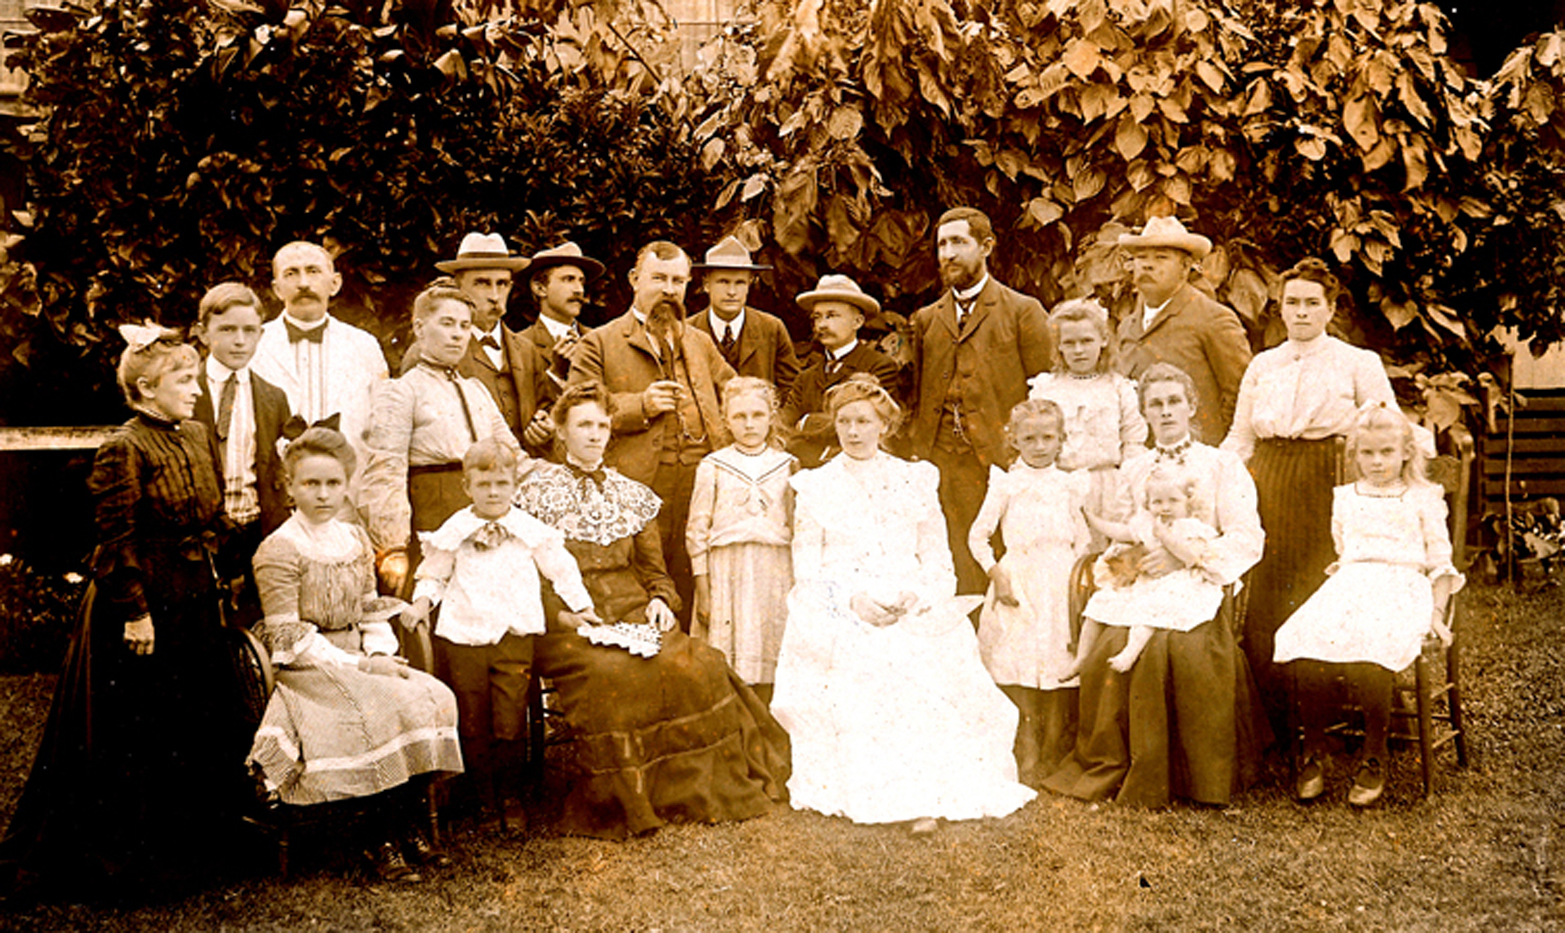 Berg family in 1902